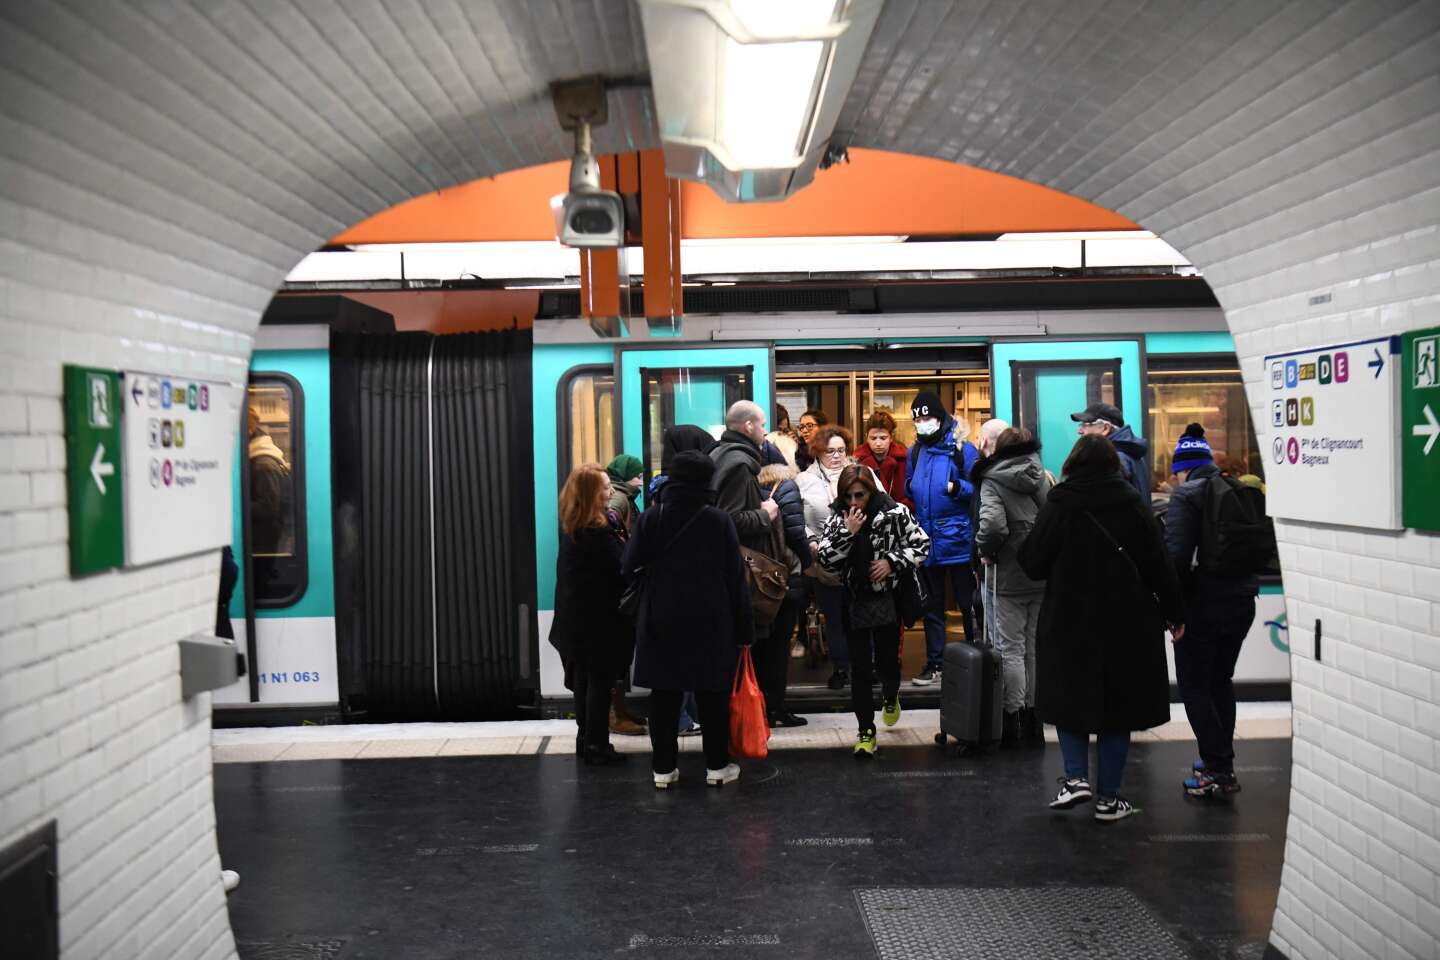 Réforme des retraites : trafic « très perturbé » dans les transports franciliens jeudi